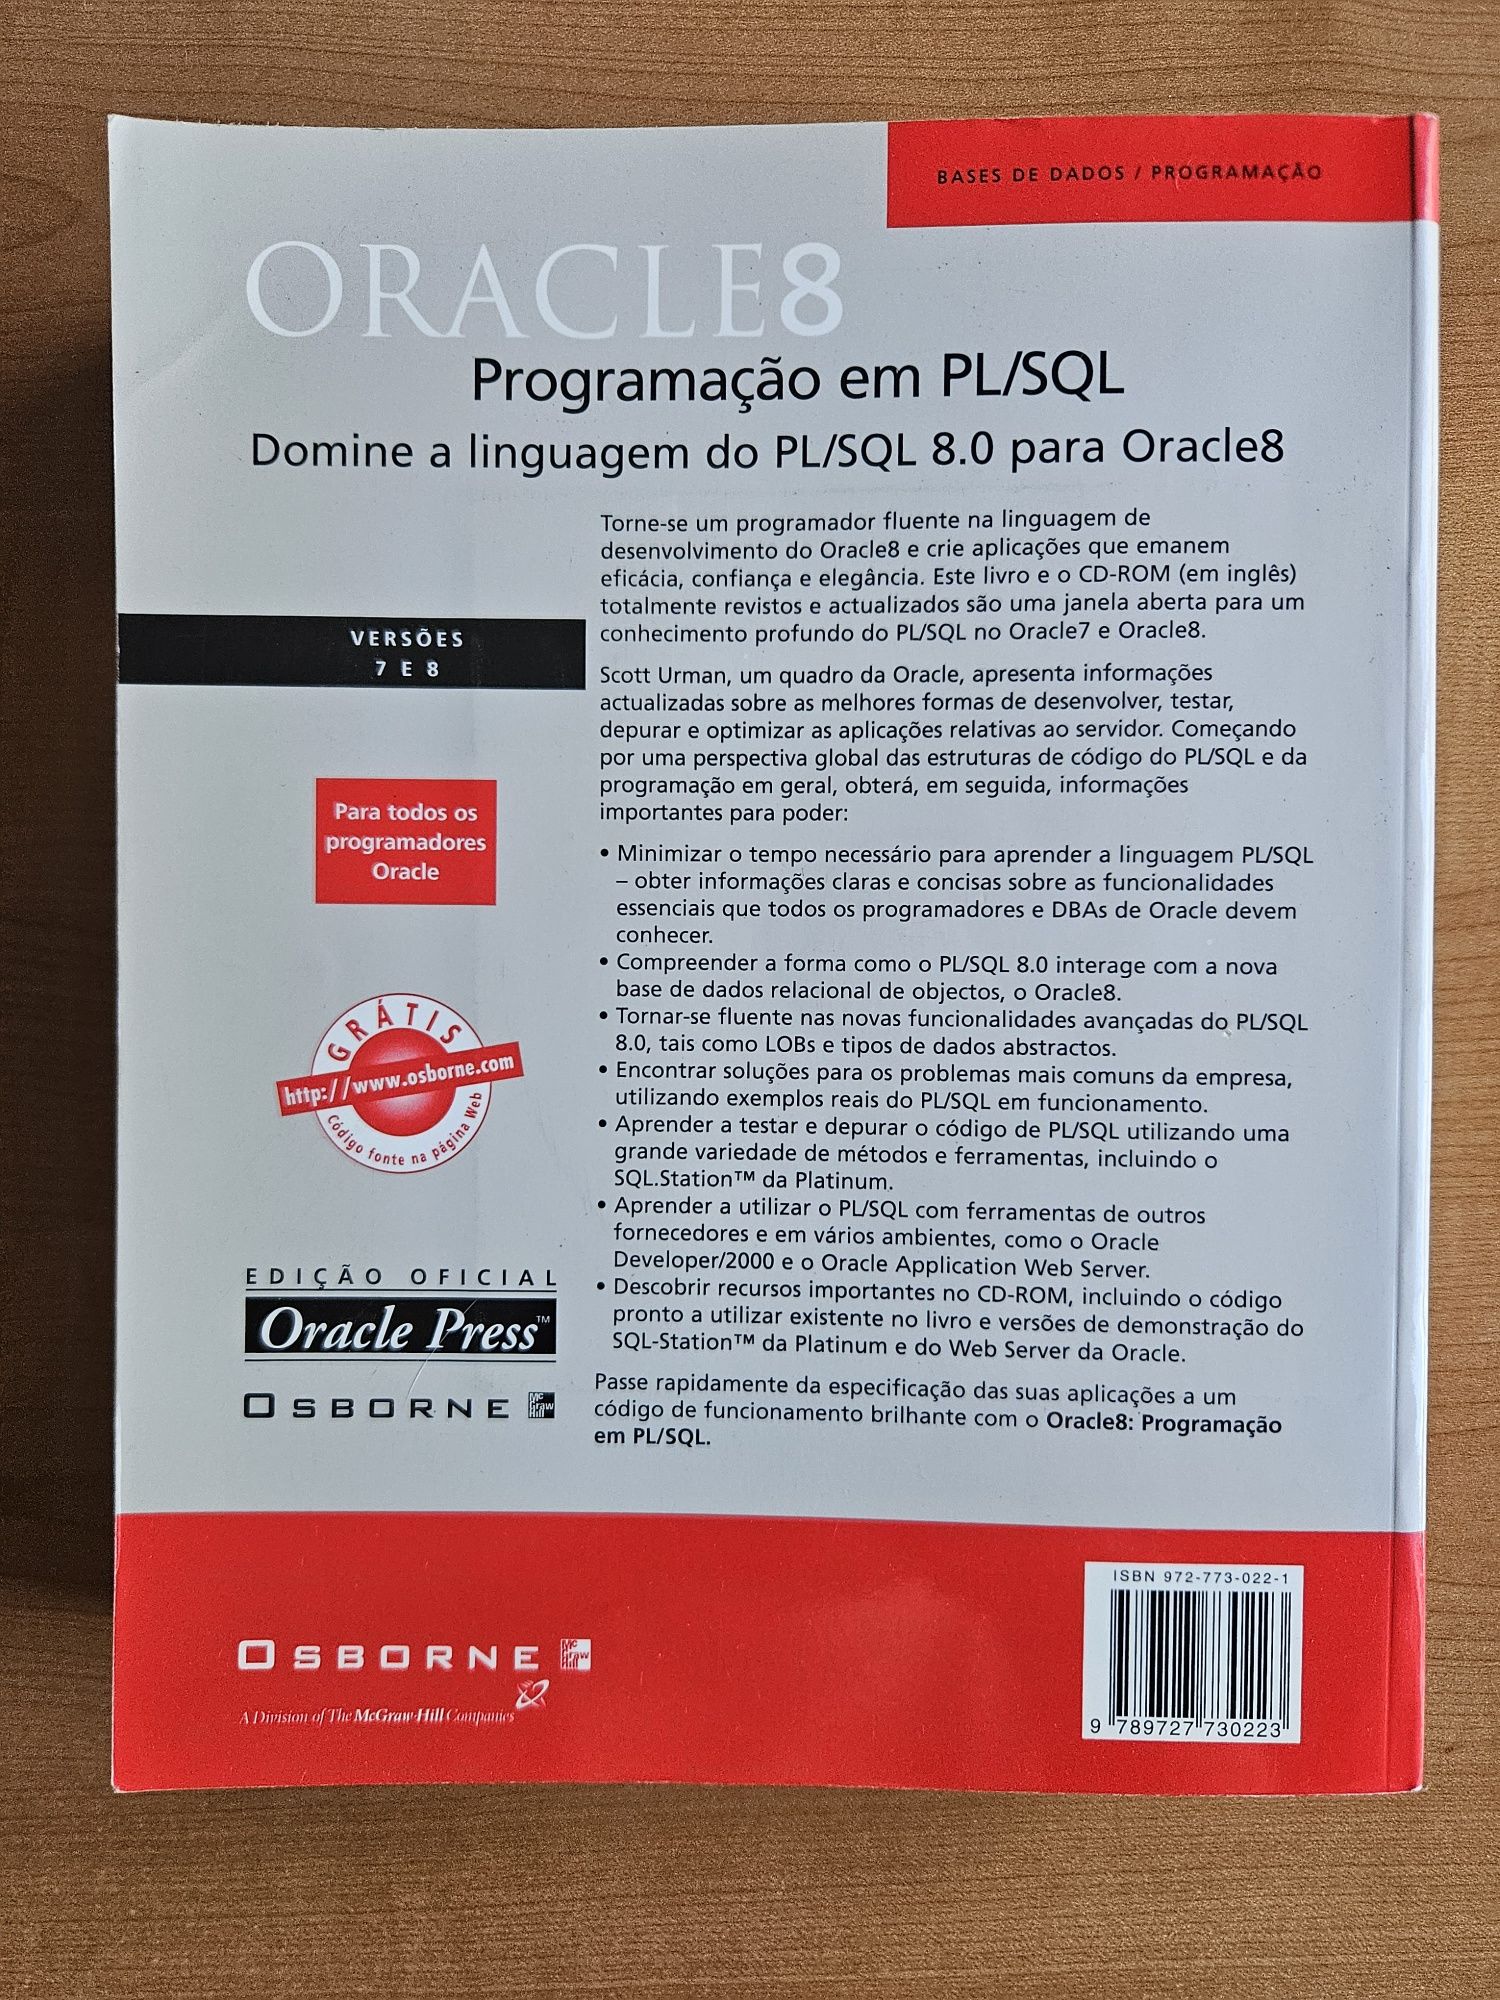 Oracle 8 Programação em PL/SQL